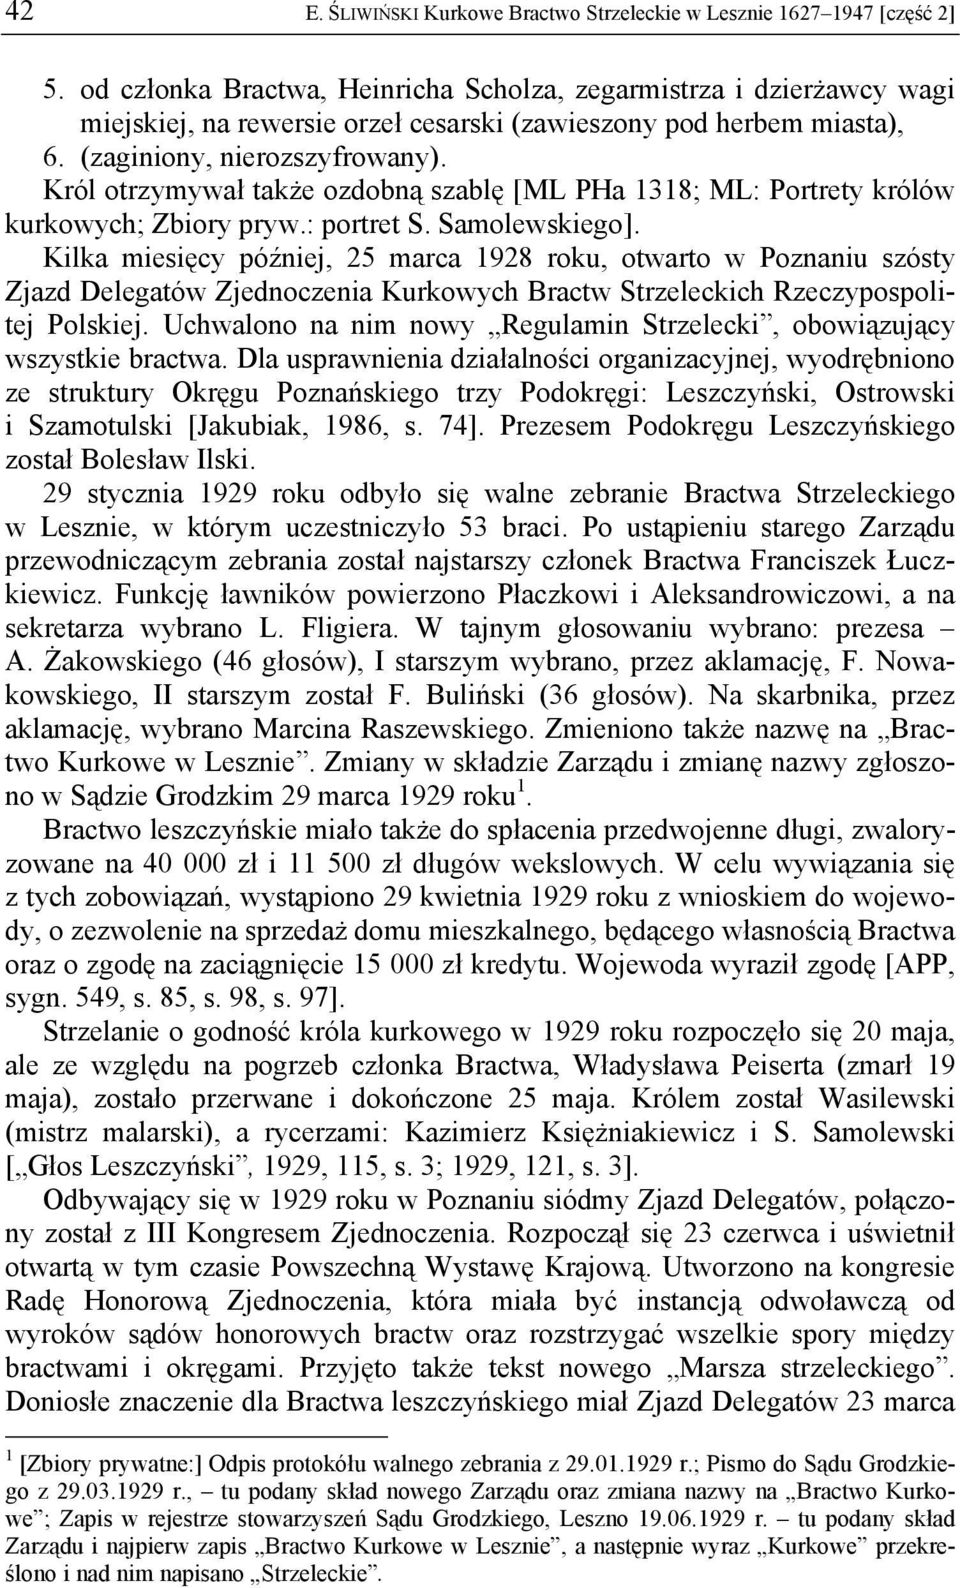 Król otrzymywał także ozdobną szablę [ML PHa 1318; ML: Portrety królów kurkowych; Zbiory pryw.: portret S. Samolewskiego].